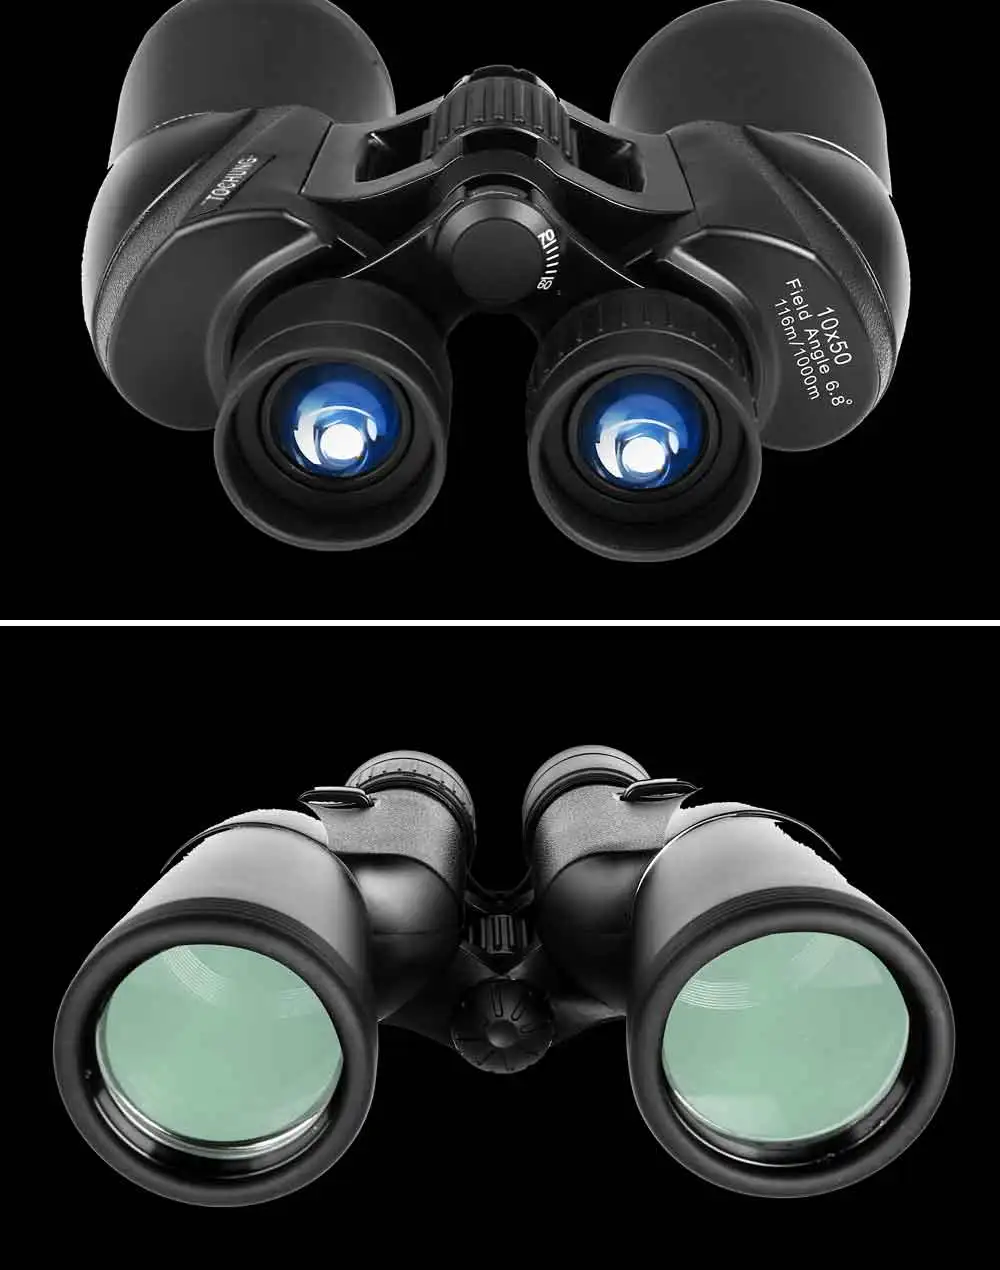 Tochung бинокль 10x50 Военные водонепроницаемый бинокль, широкий угол зрения Увеличить бинокль телескоп для охоты Открытый